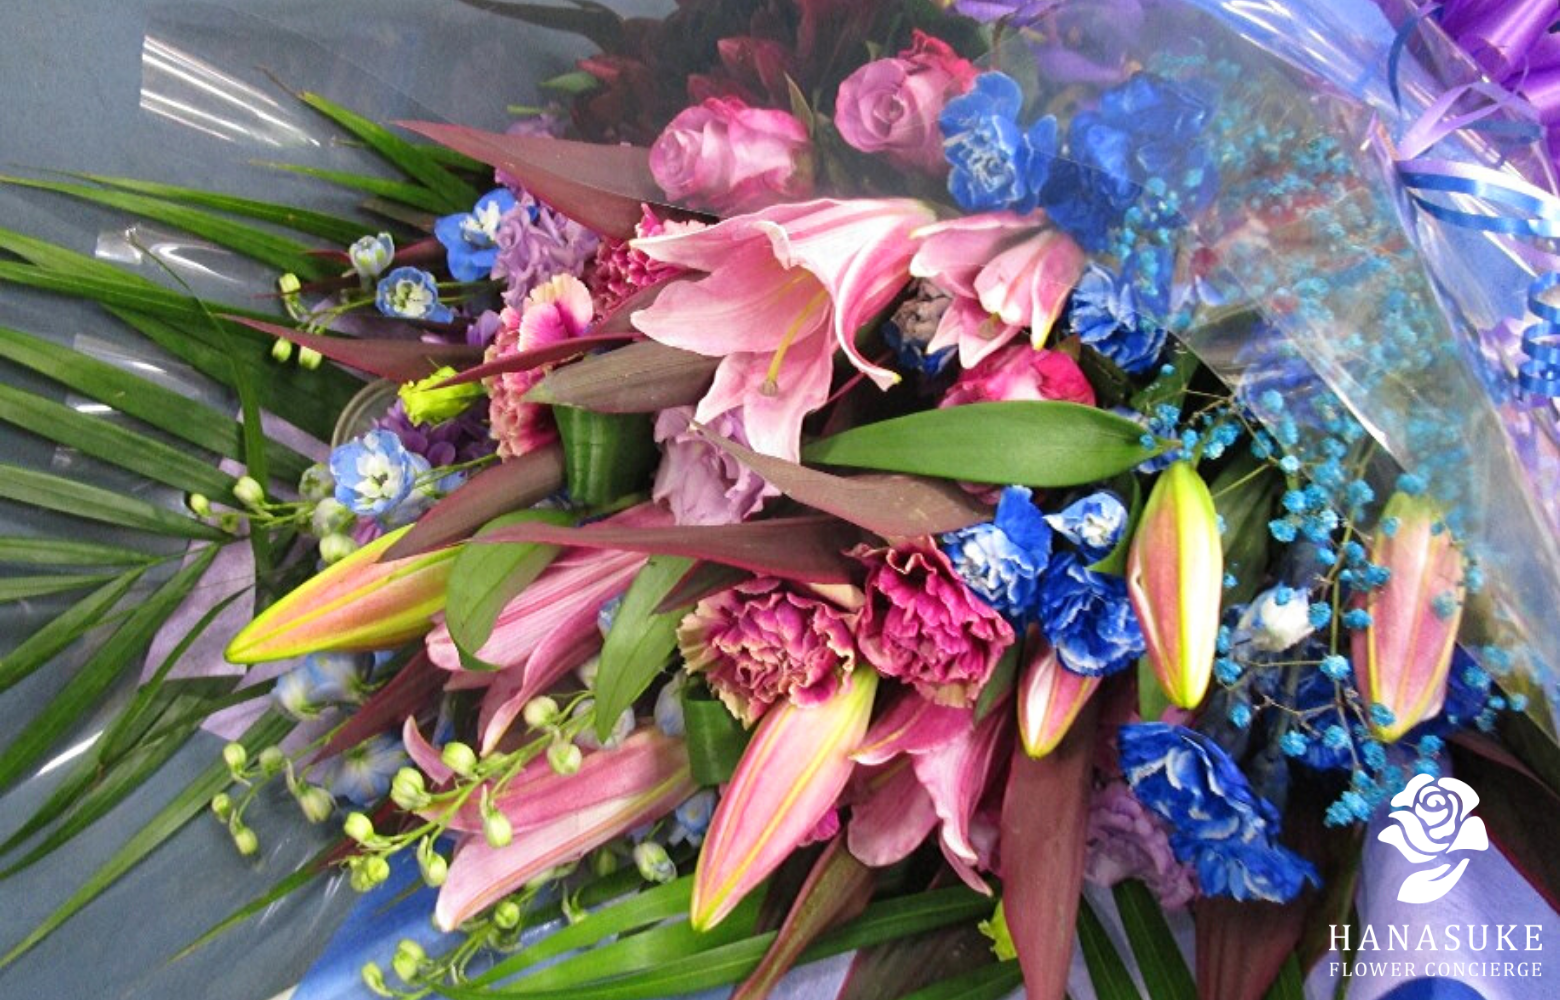 キャバクラ クラブの女の子の誕生日に喜ばれるフラワーギフト５選 祝花の花助 贈答用の花の選び方やマナーをご紹介